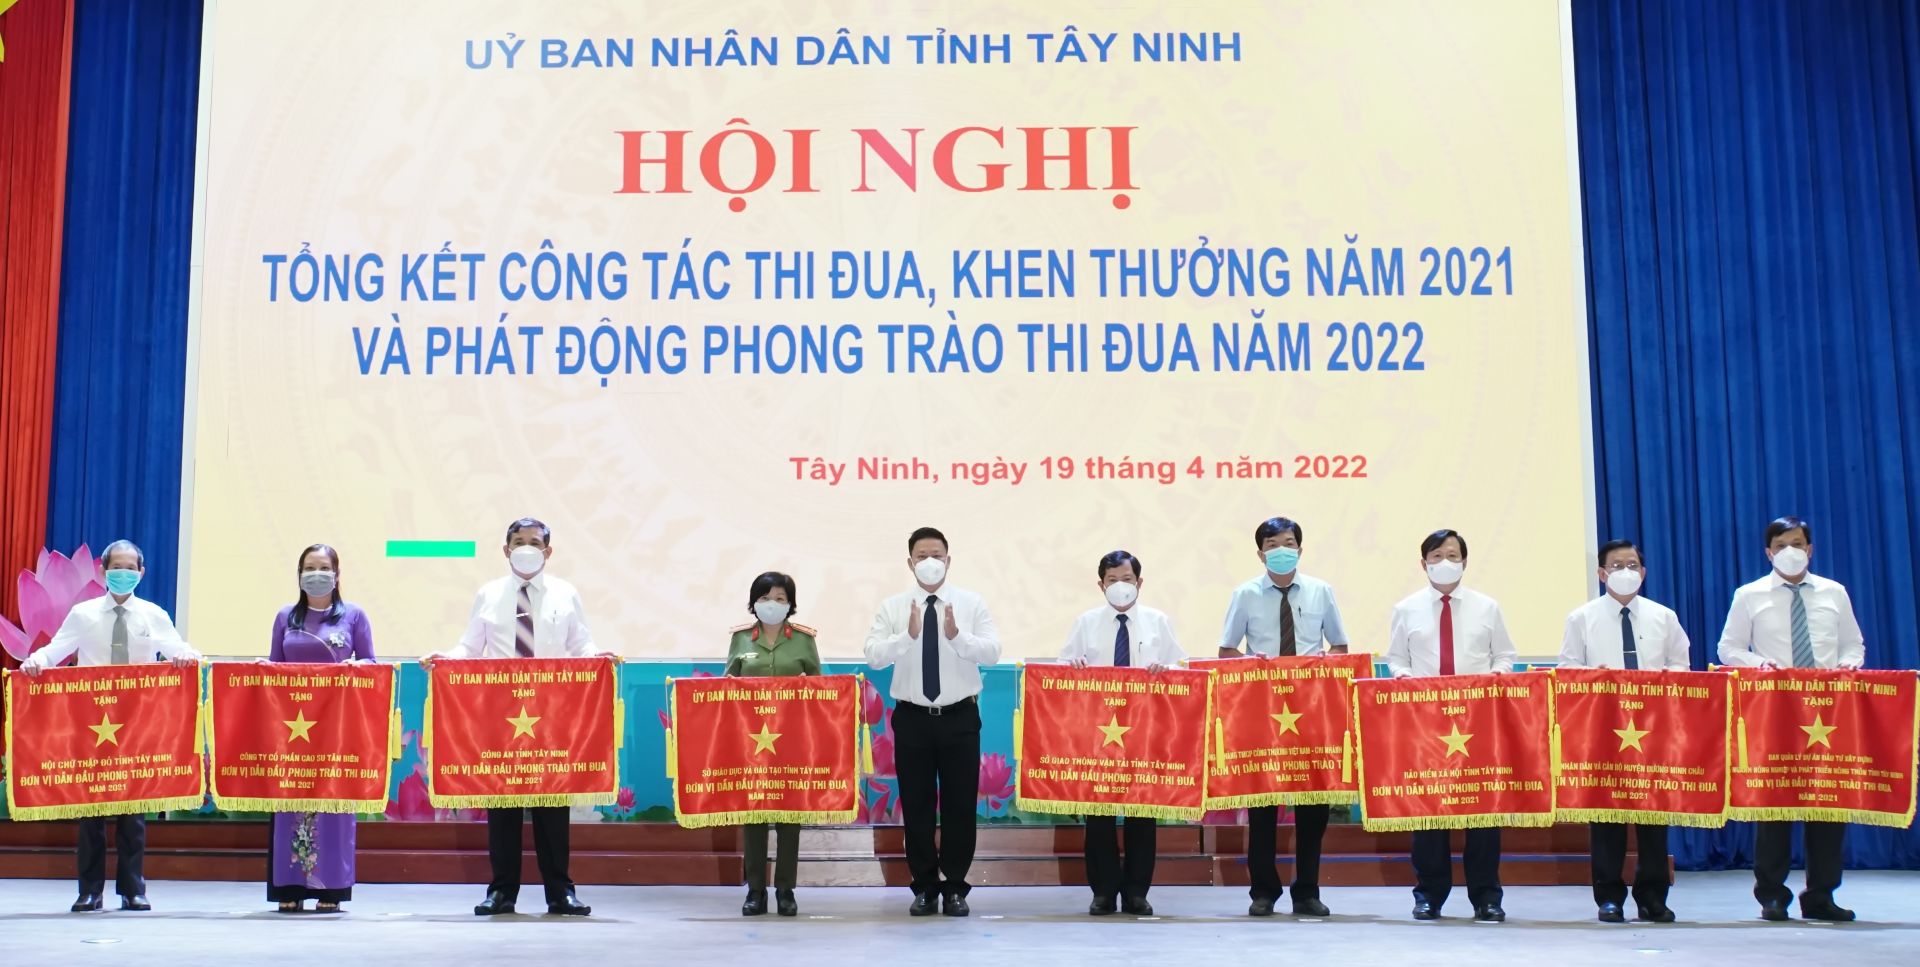 Điểm báo in Tây Ninh ngày 21.04.2022